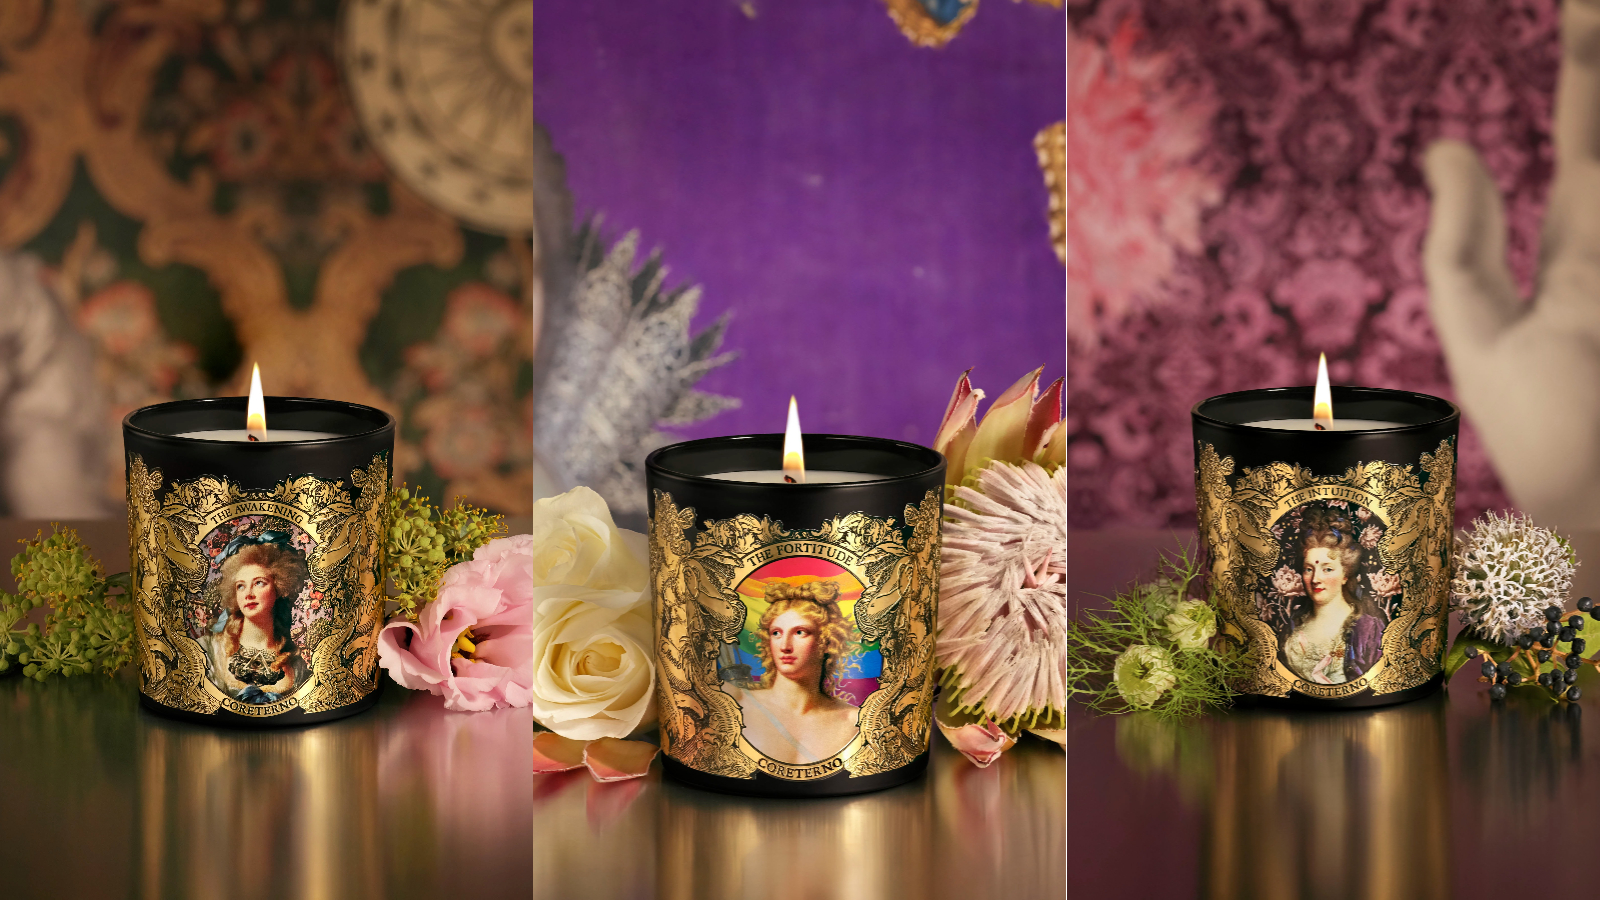 【美容】復古畫風手工蠟燭 意大利藝術香氛的魅力